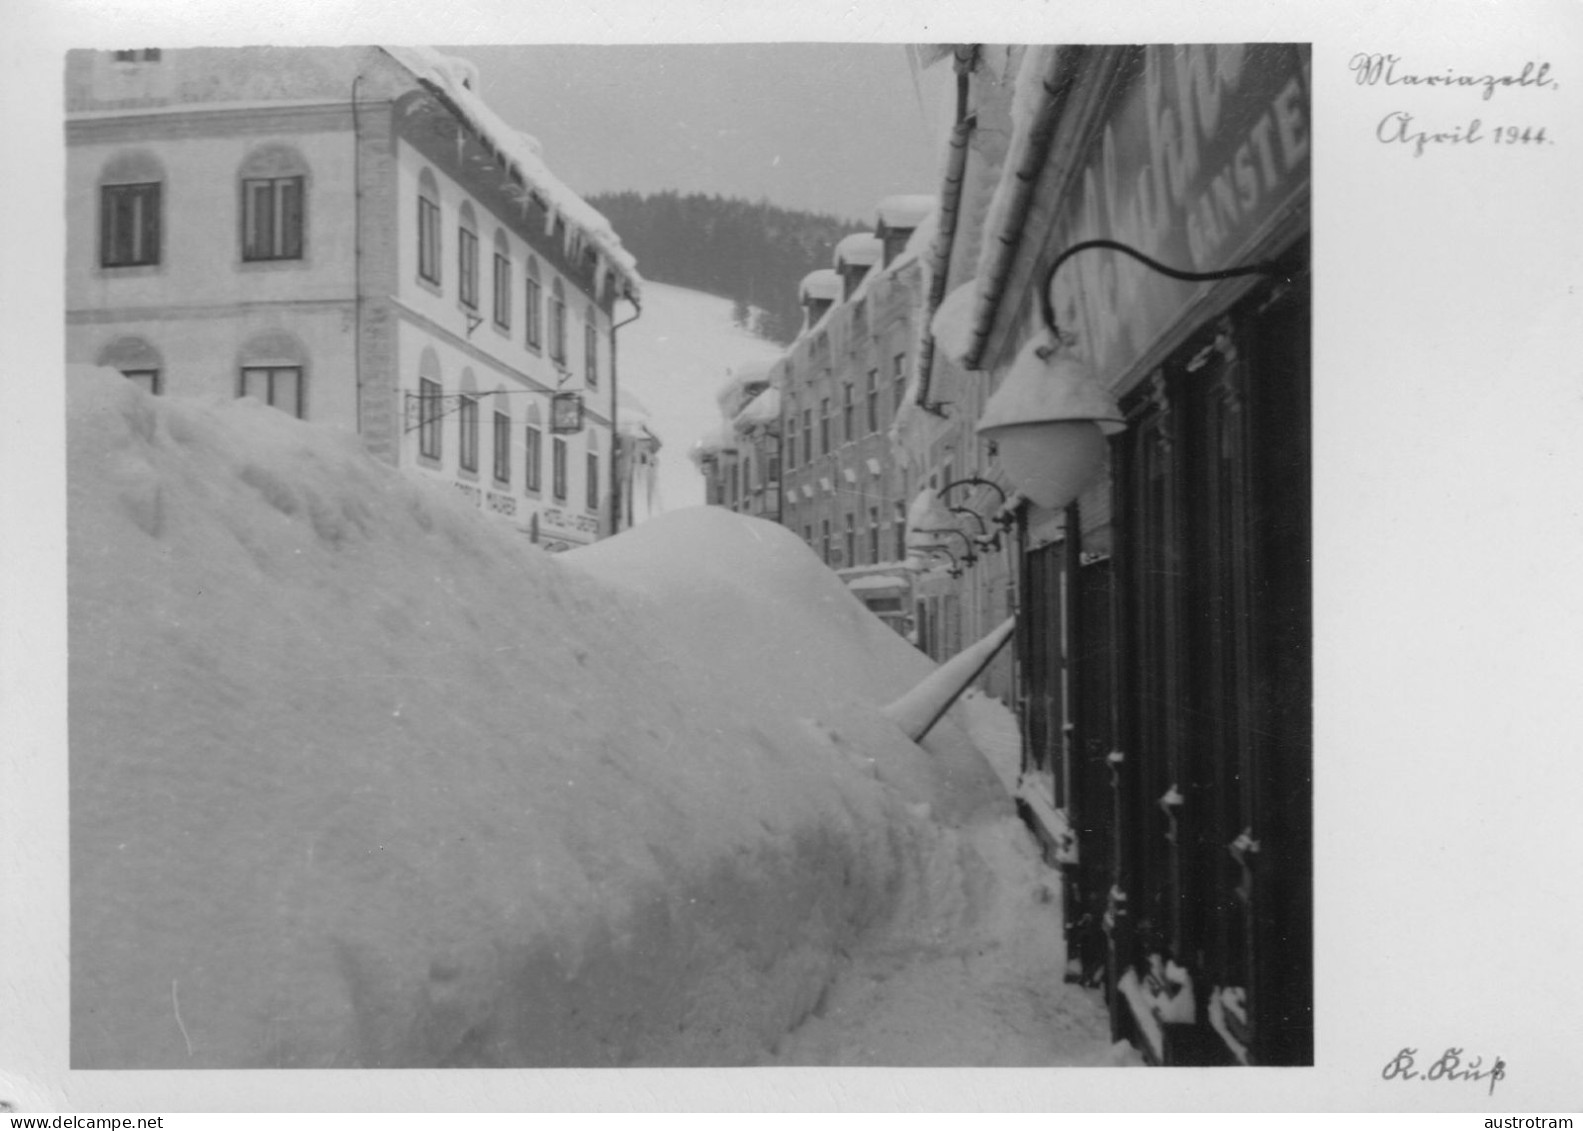 Mariazell - April 1944 - Bild 5 - Verlag Klaus Kuss, Mariazell - Mariazell